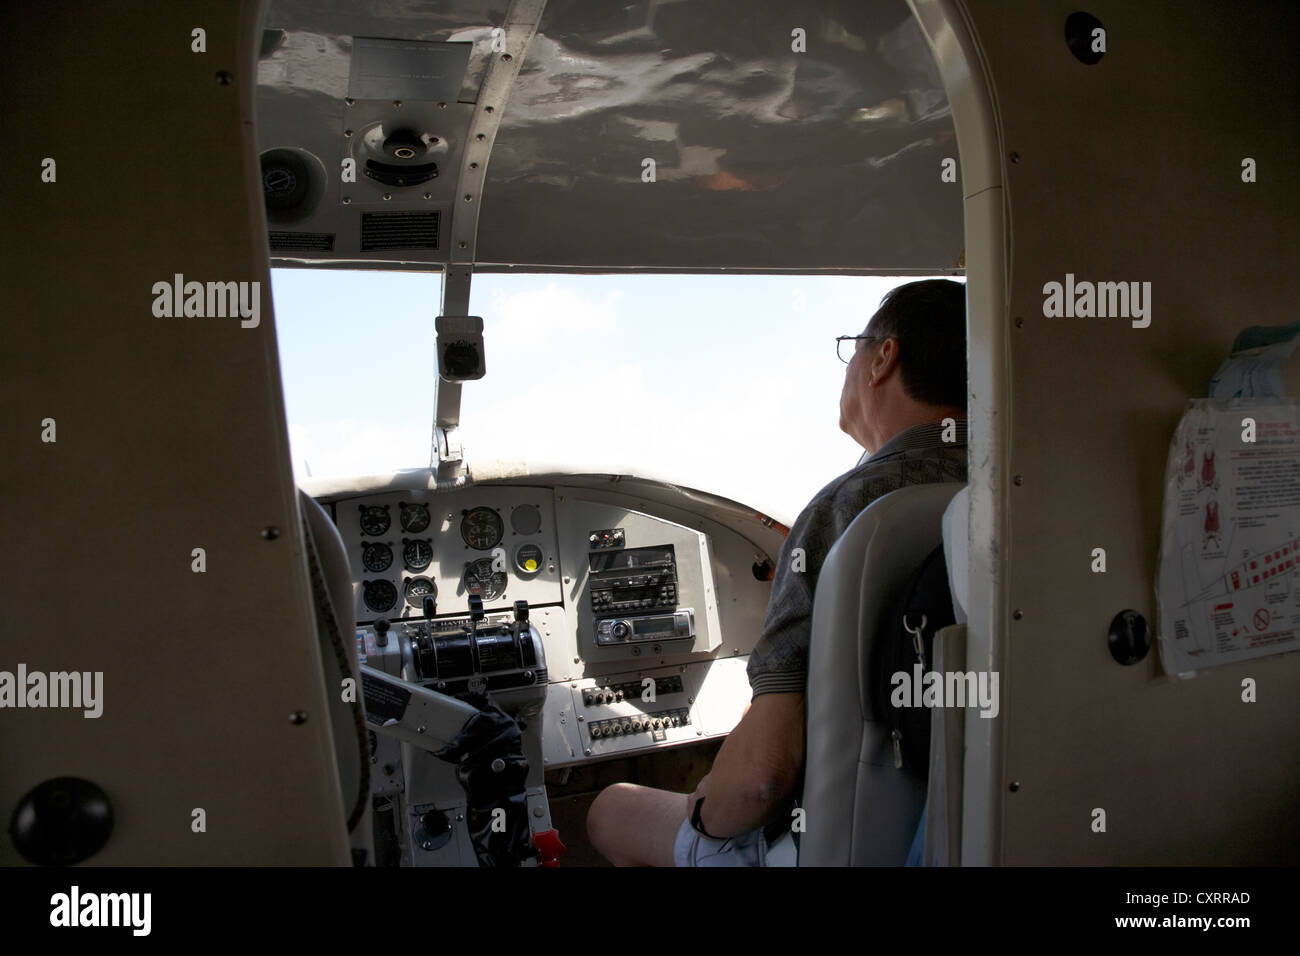 Asiento de Copilot flight deck dehaviland DHC-3 otter hidroavión en el aeropuerto internacional de Key West Florida Keys usa Foto de stock